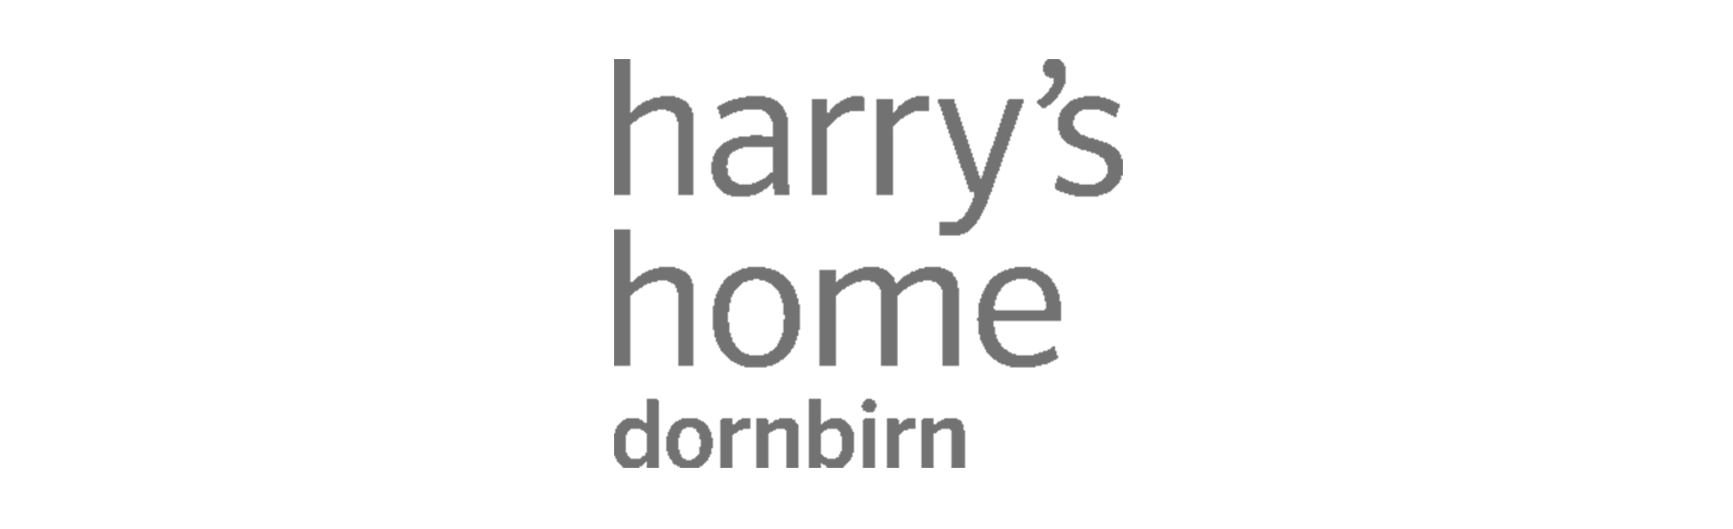 harrys-home